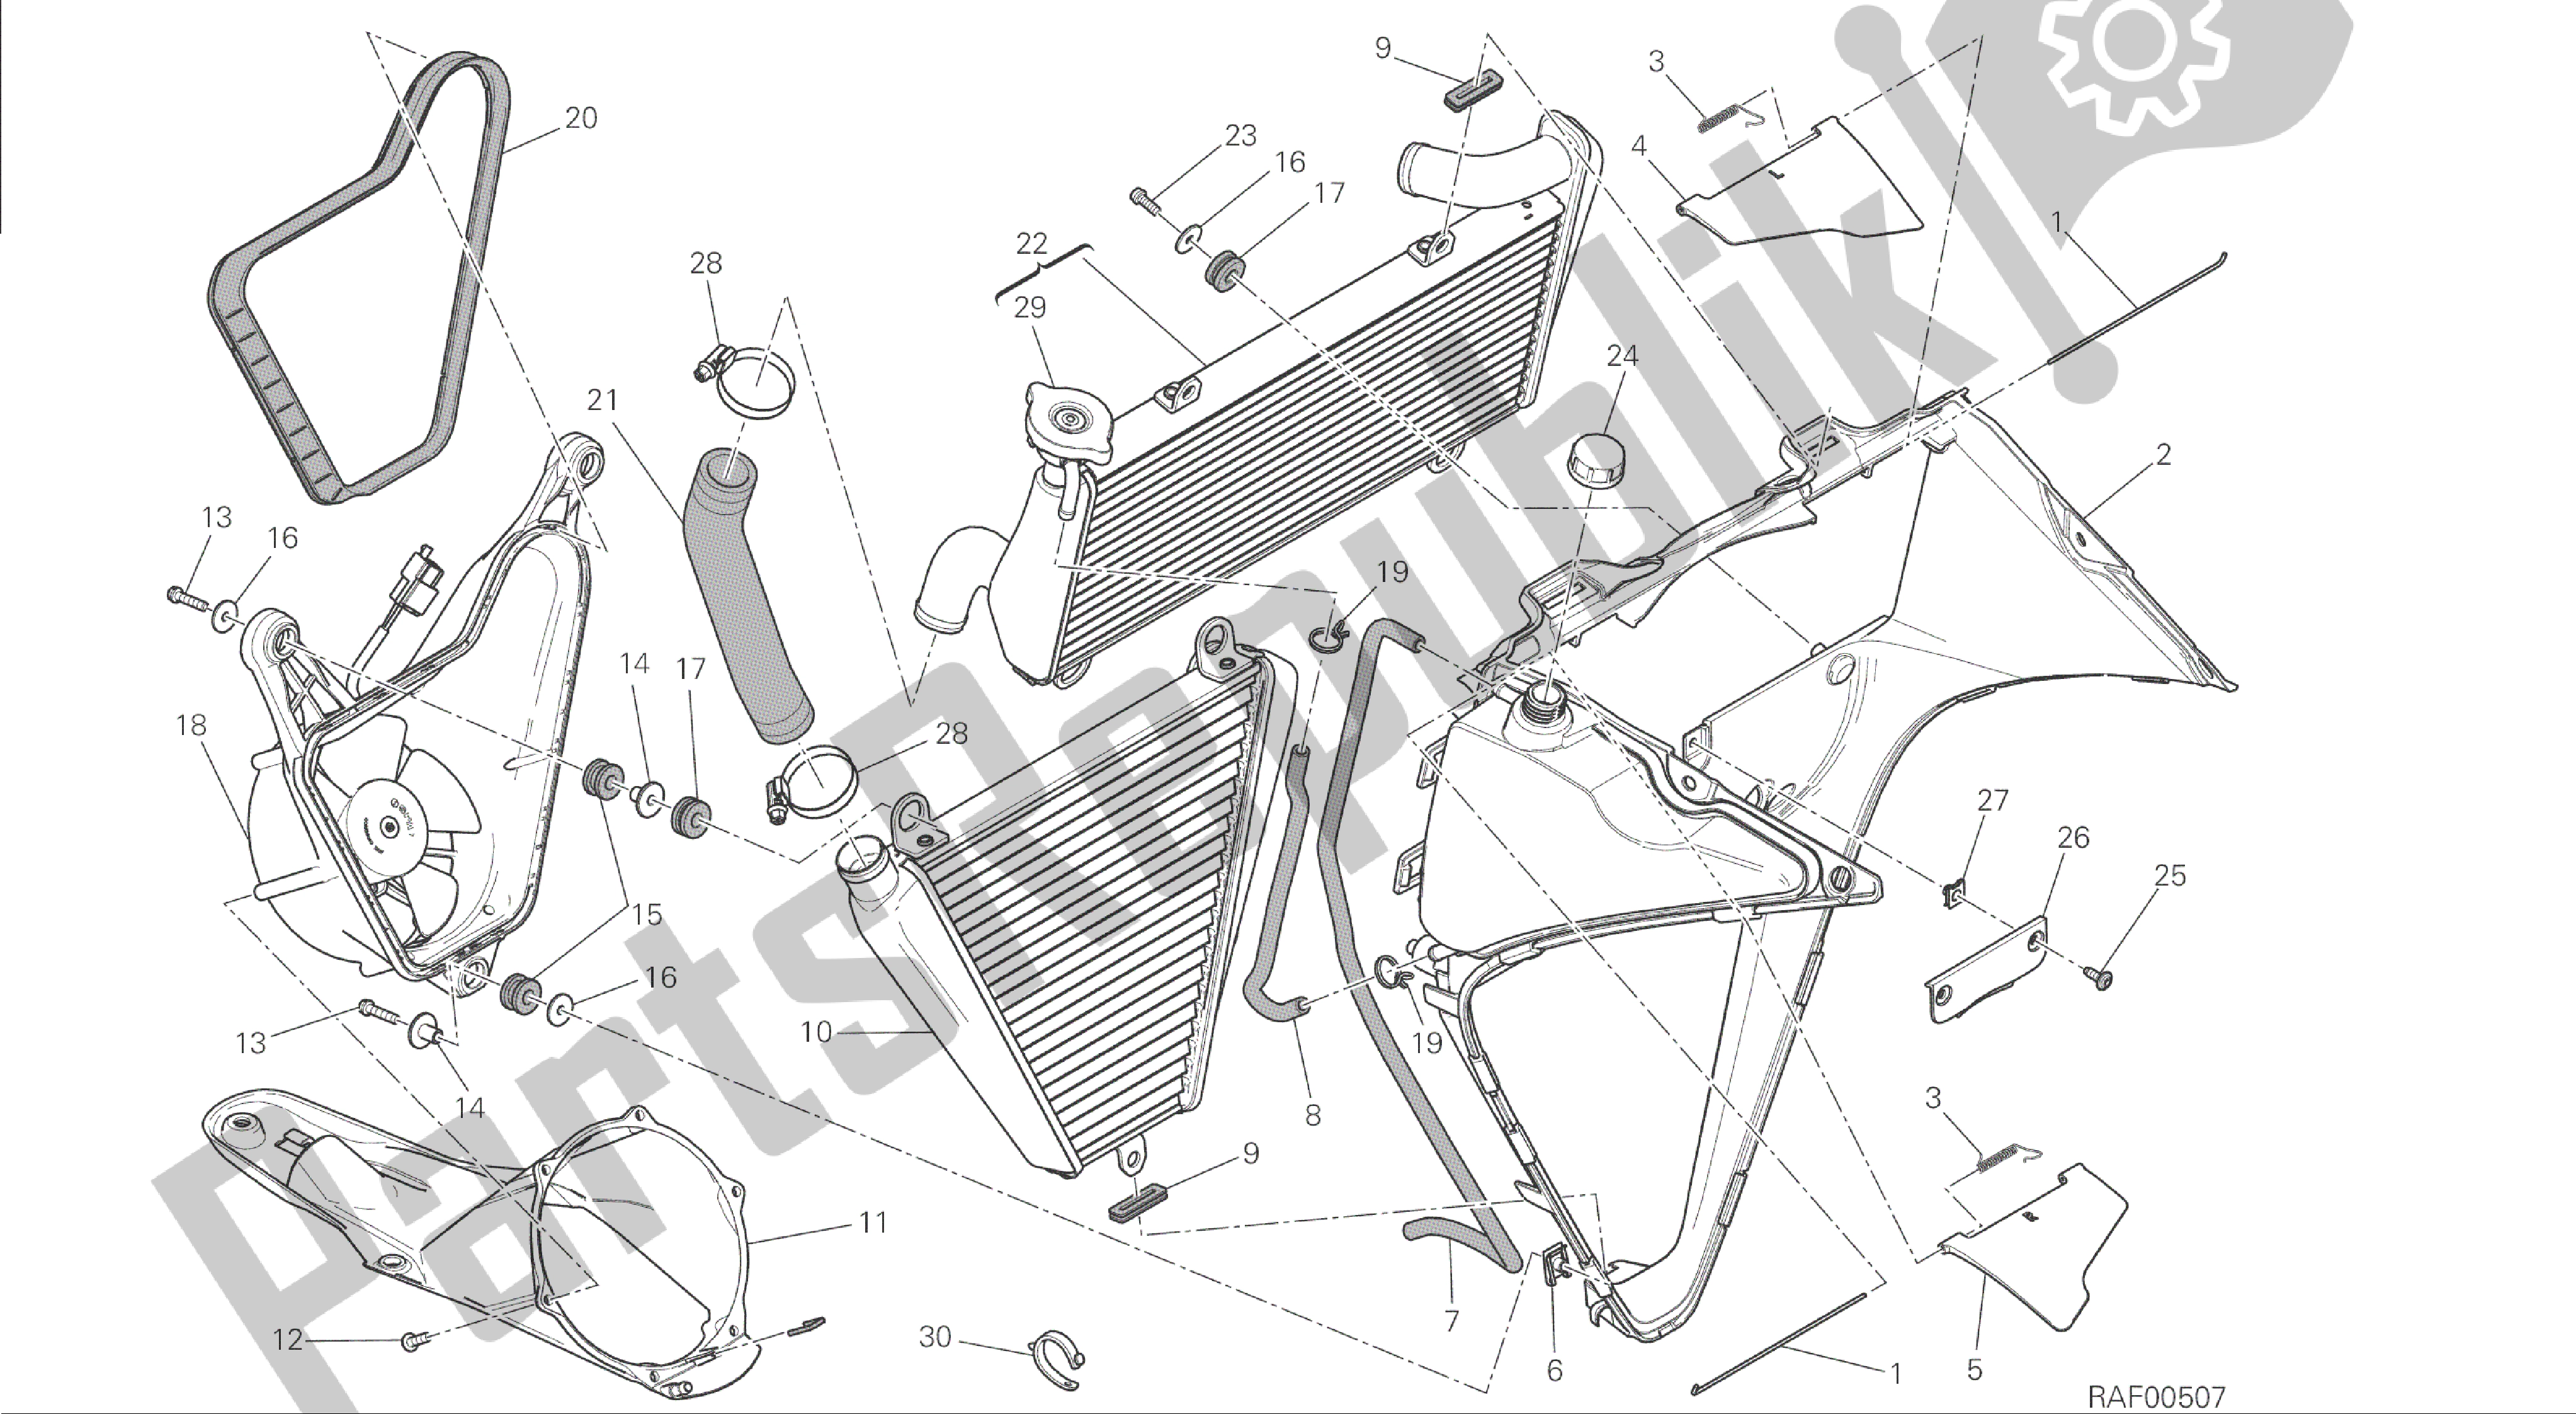 Todas las partes para Dibujo 030 - Enfriador De Agua [mod: 1199 Abs; Xst: Marco De Grupo Aus, Bra, Chn, Eur, Fra, Jap] de Ducati Panigale ABS 1199 2014